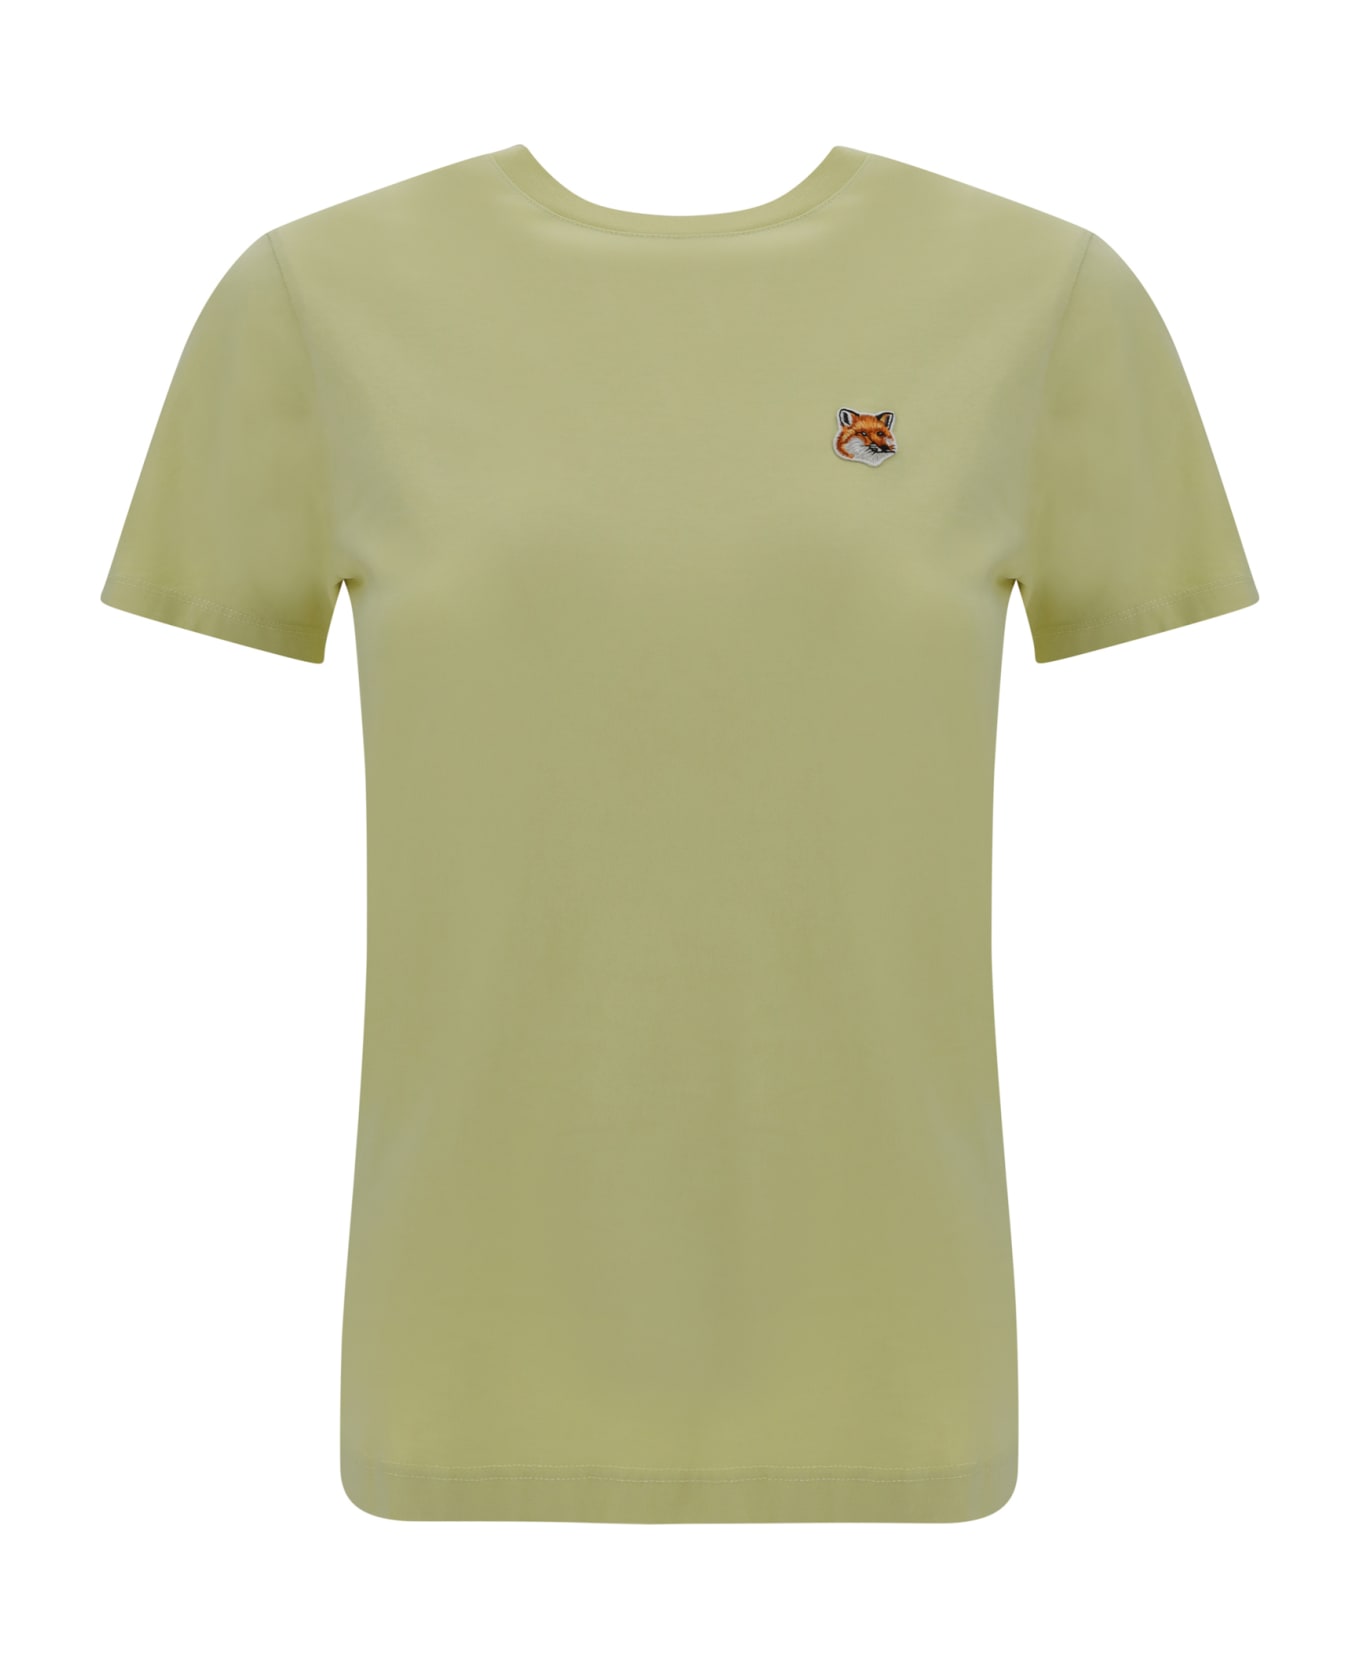 Maison Kitsuné T-shirt - Chalk Yellow Tシャツ